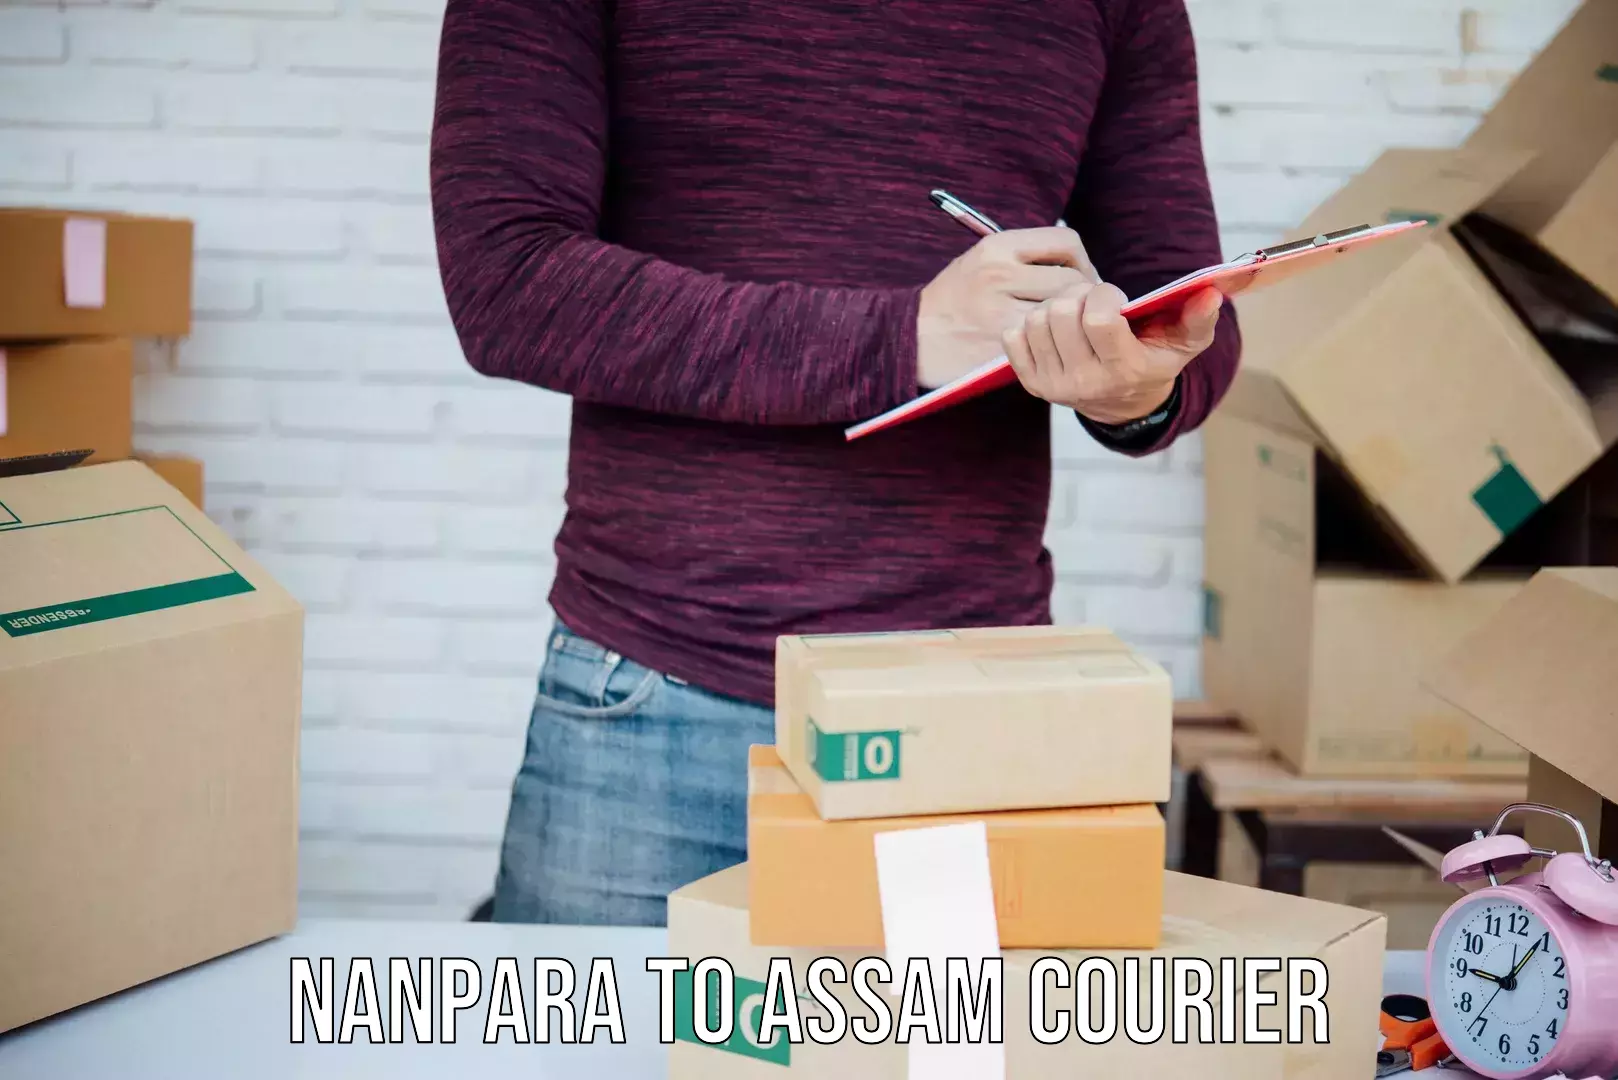 Digital courier platforms Nanpara to Dhubri